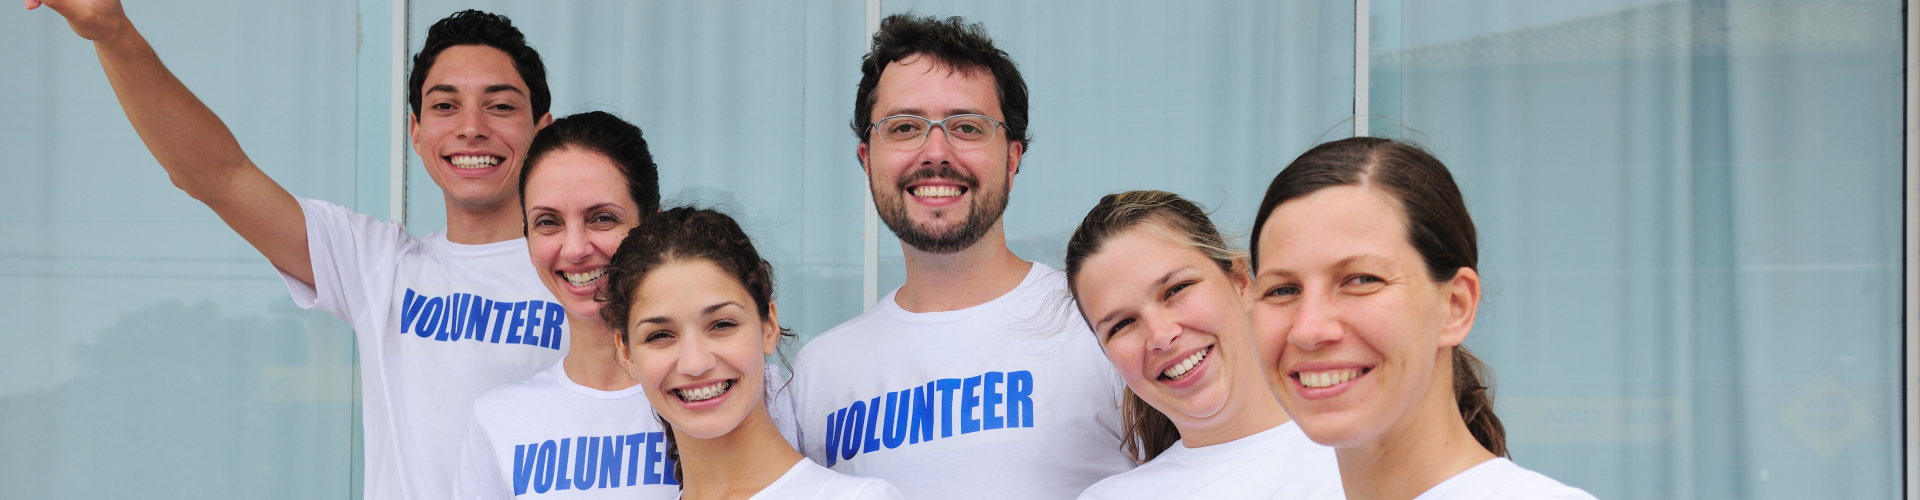 group of volunteers smiling